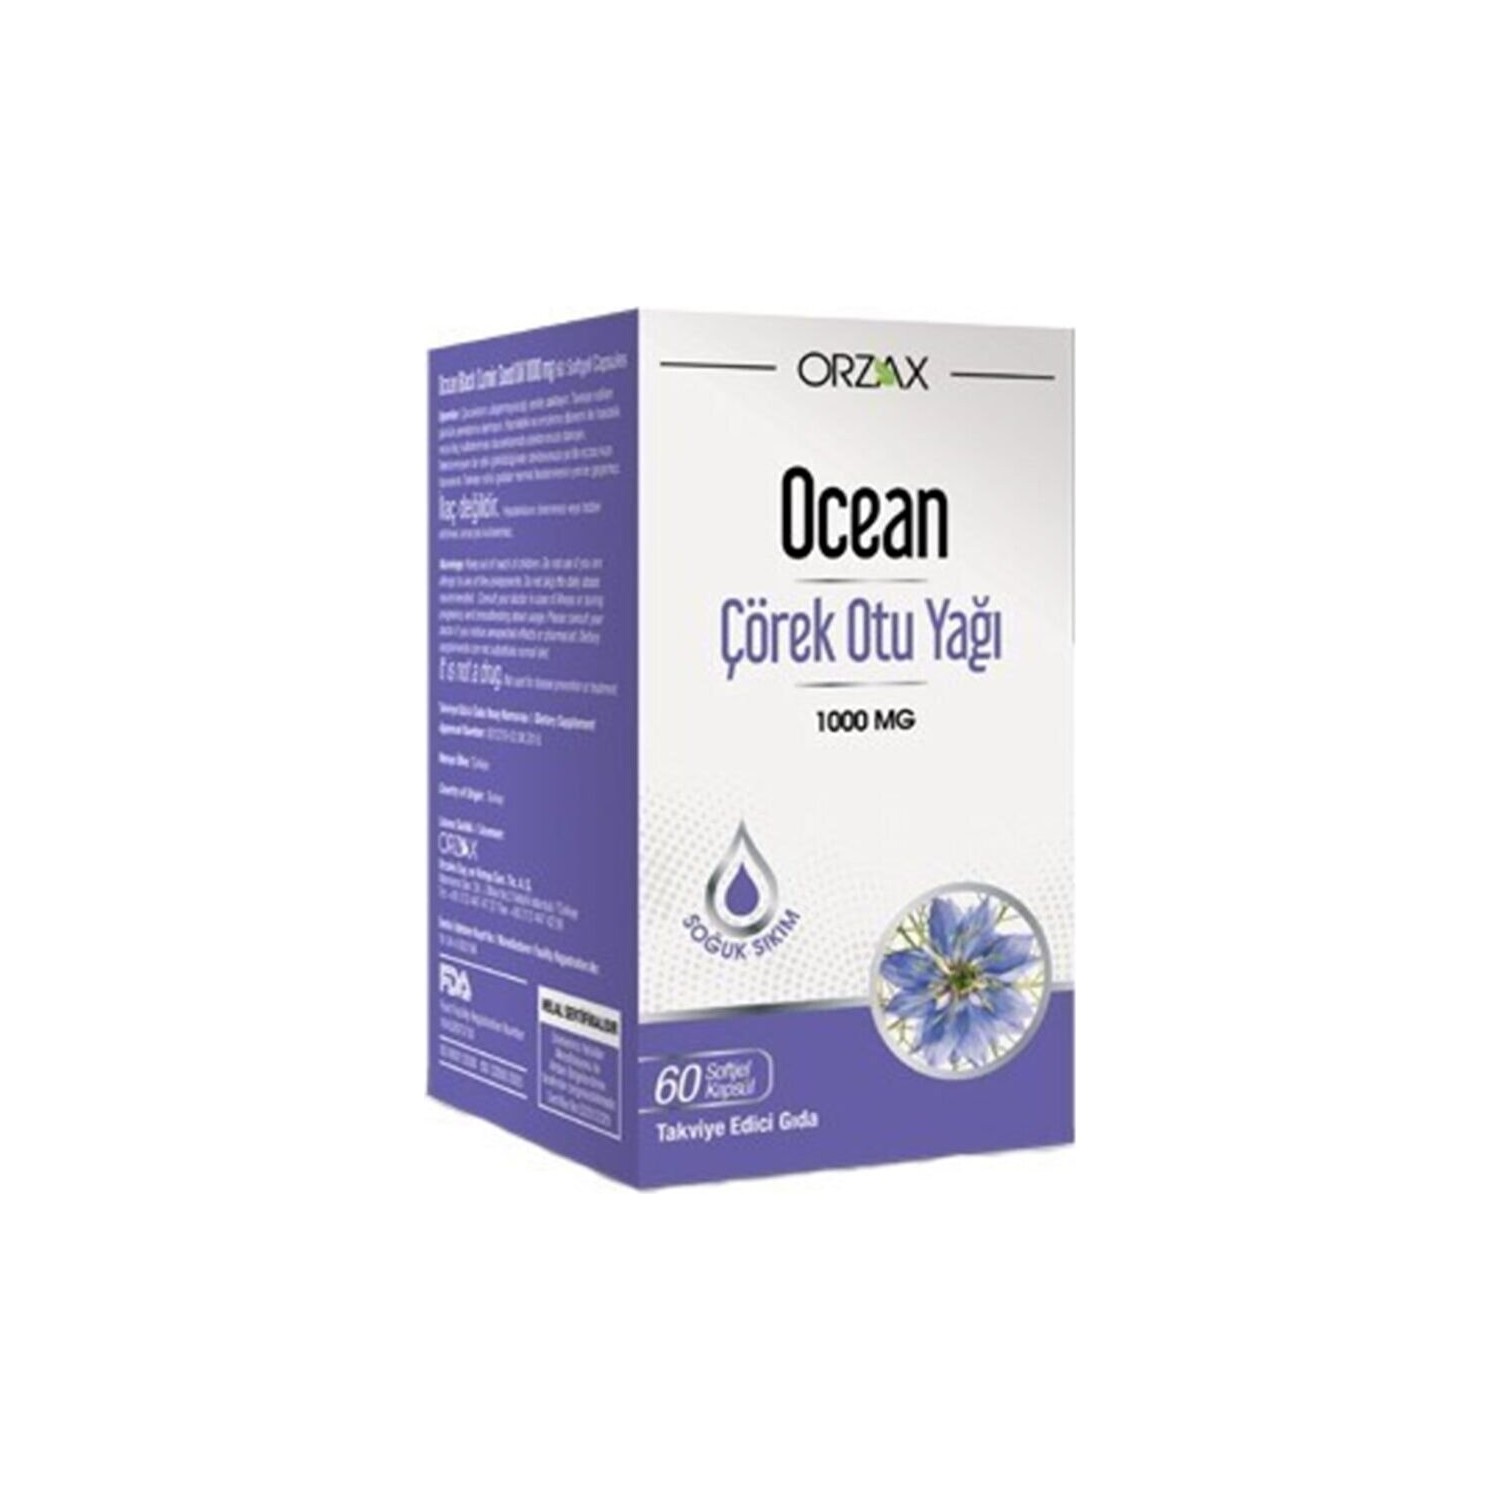 Масло черного тмина Ocean, 60 капсул Dcn101, 1000 мг масло черного тмина orzax ocean 1000 мг 2 упаковки